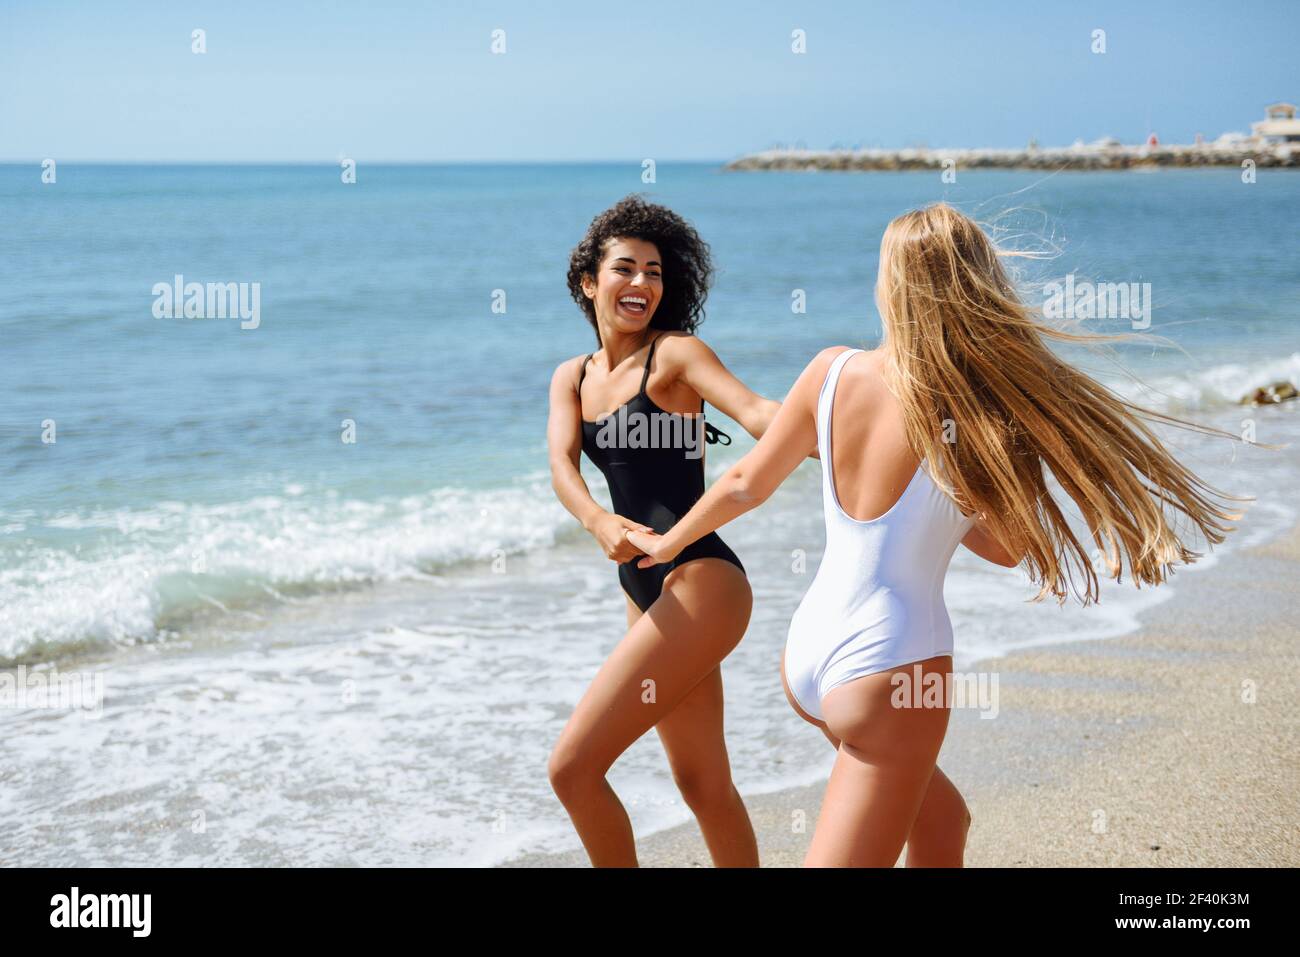 Zwei junge Frauen mit schönen Körpern in Bademode, die Spaß mit ihren  Händen am Strand gefangen haben. Lustige kaukasische und arabische Frauen  tragen schwarze und weiße Badeanzüge. Zwei Frauen im Badeanzug haben